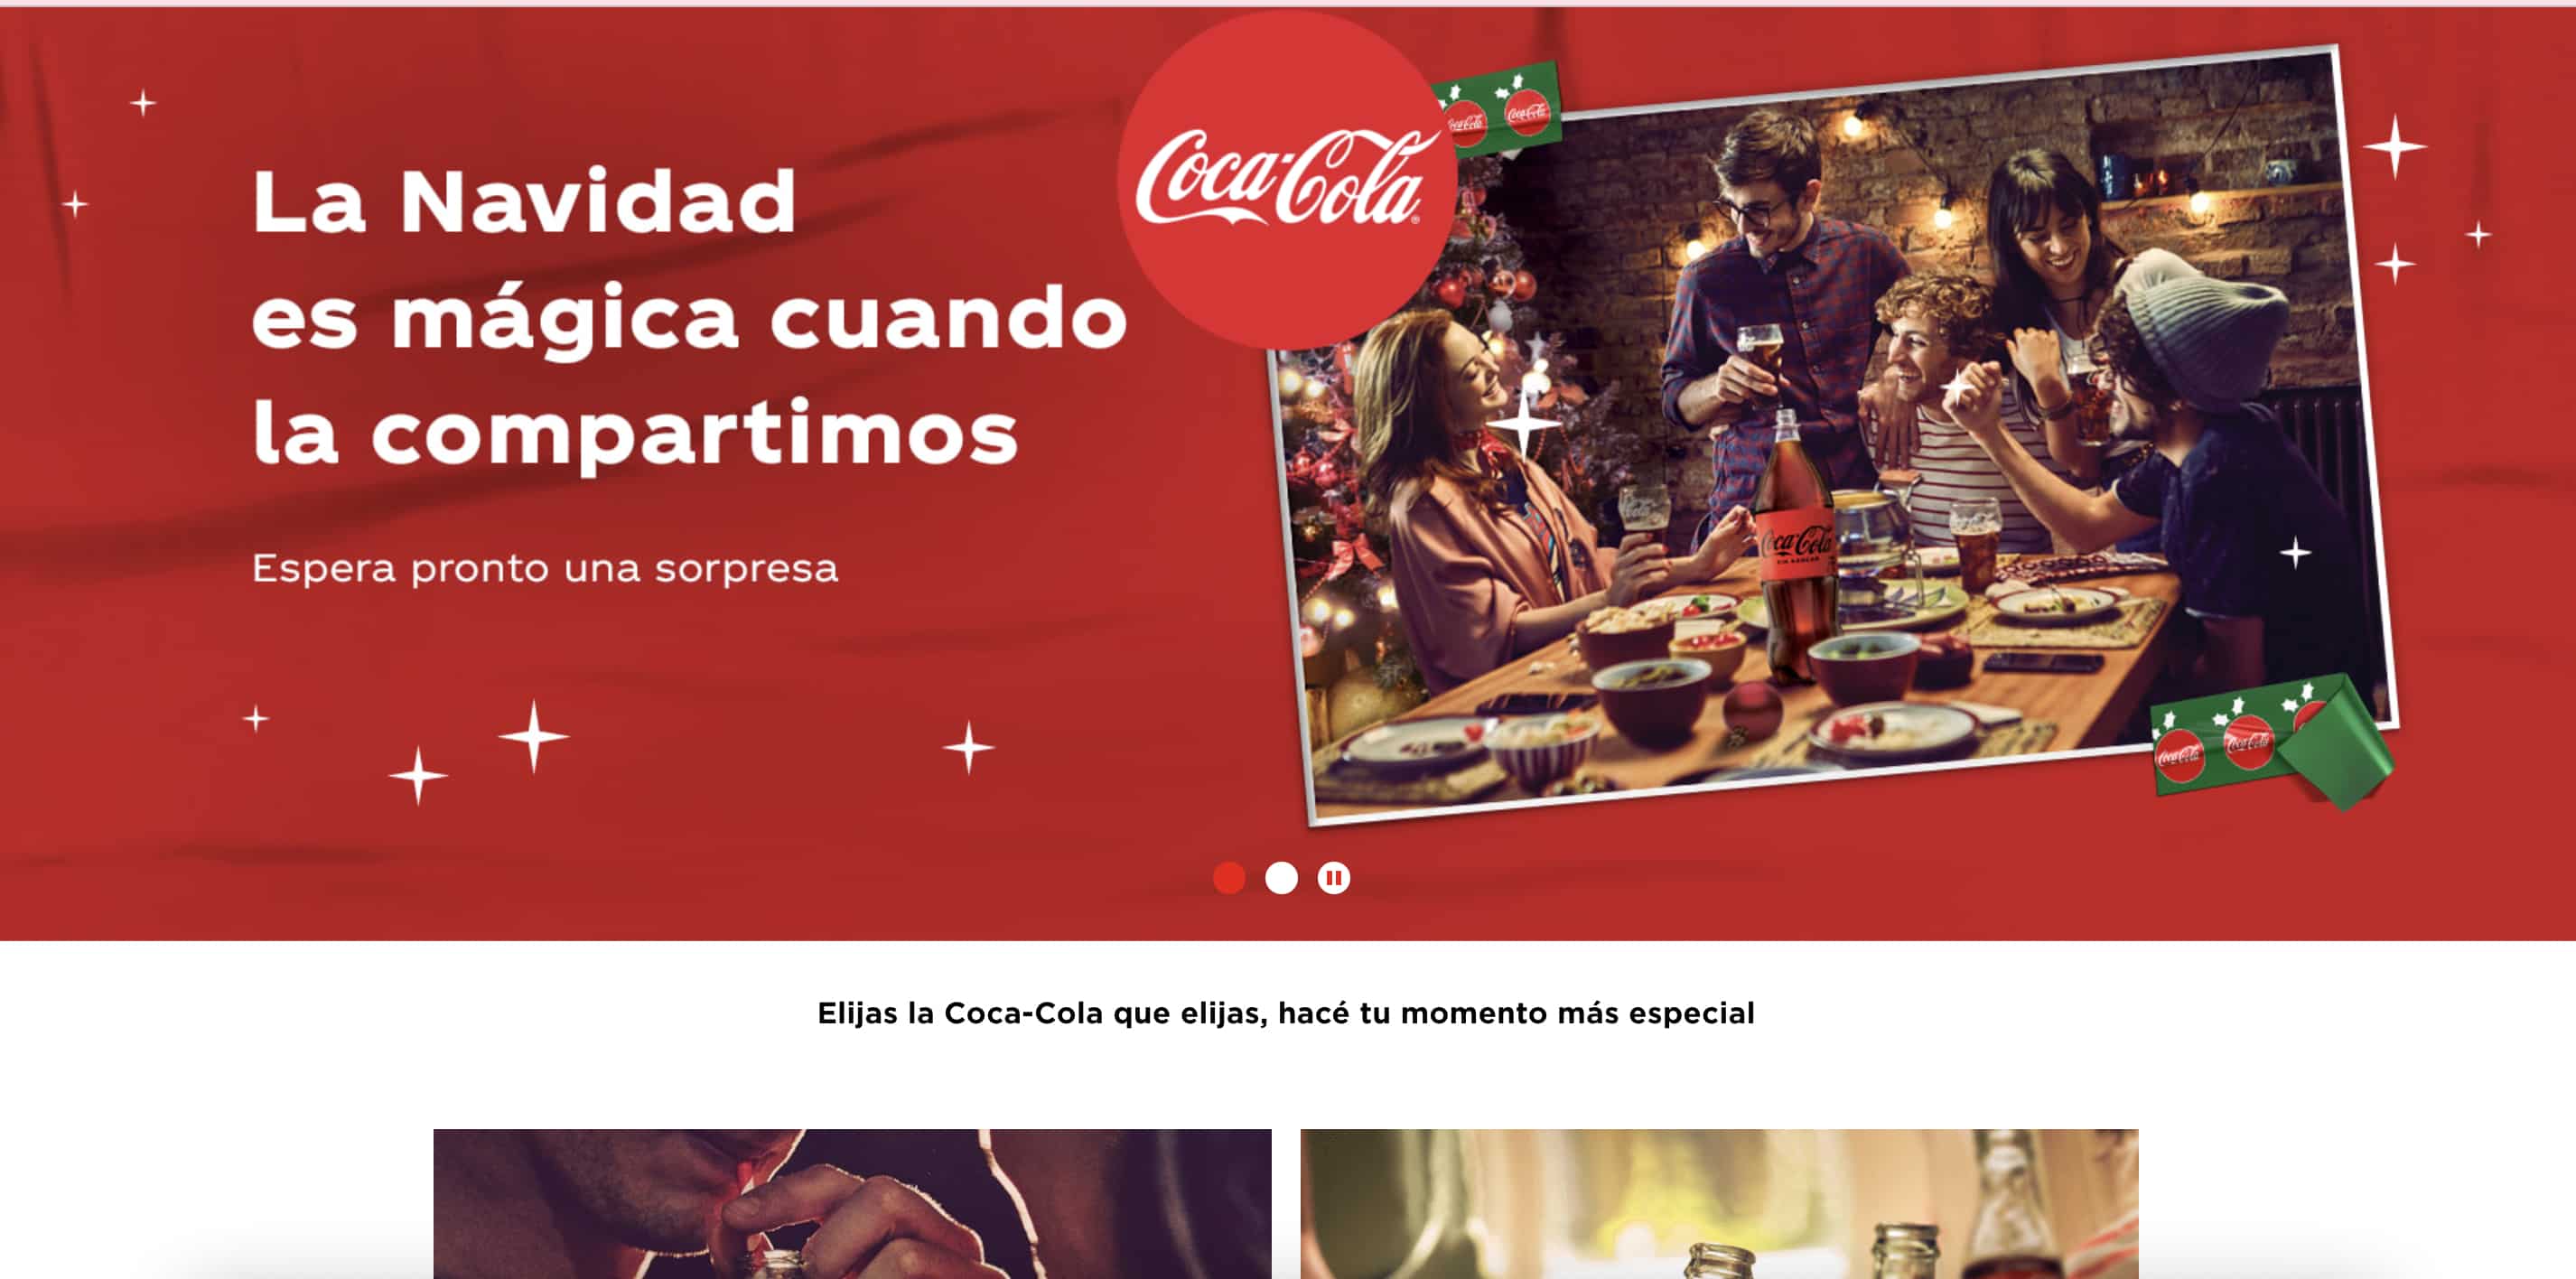 Diseños de páginas web de Navidad: Cola-Cola